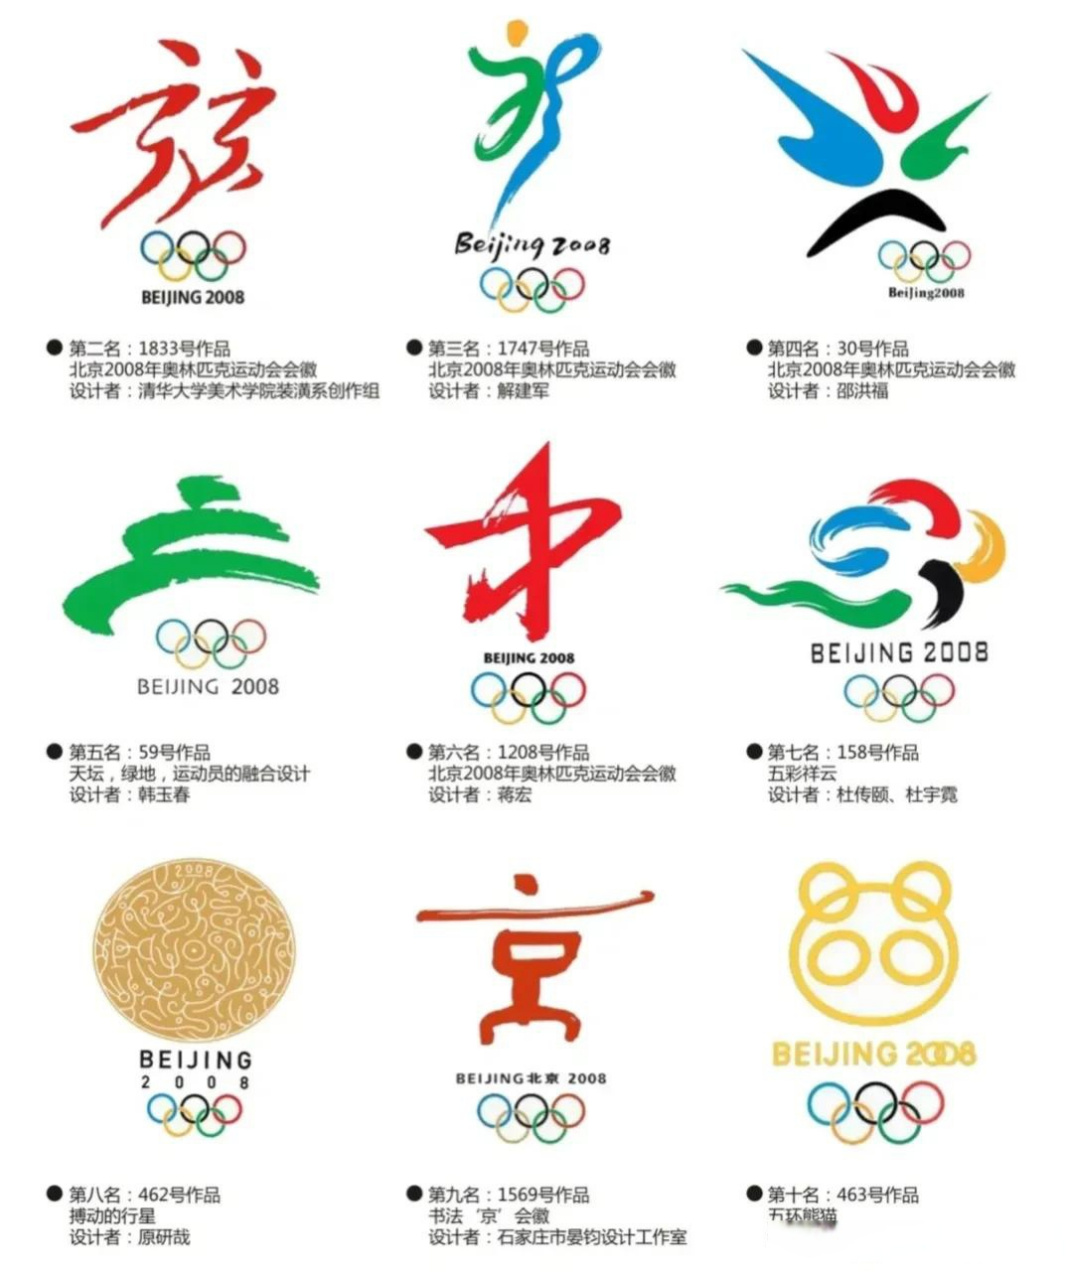 2008年北京奥运会排名前十的会徽设计方案,感觉都很有创意,直到看到